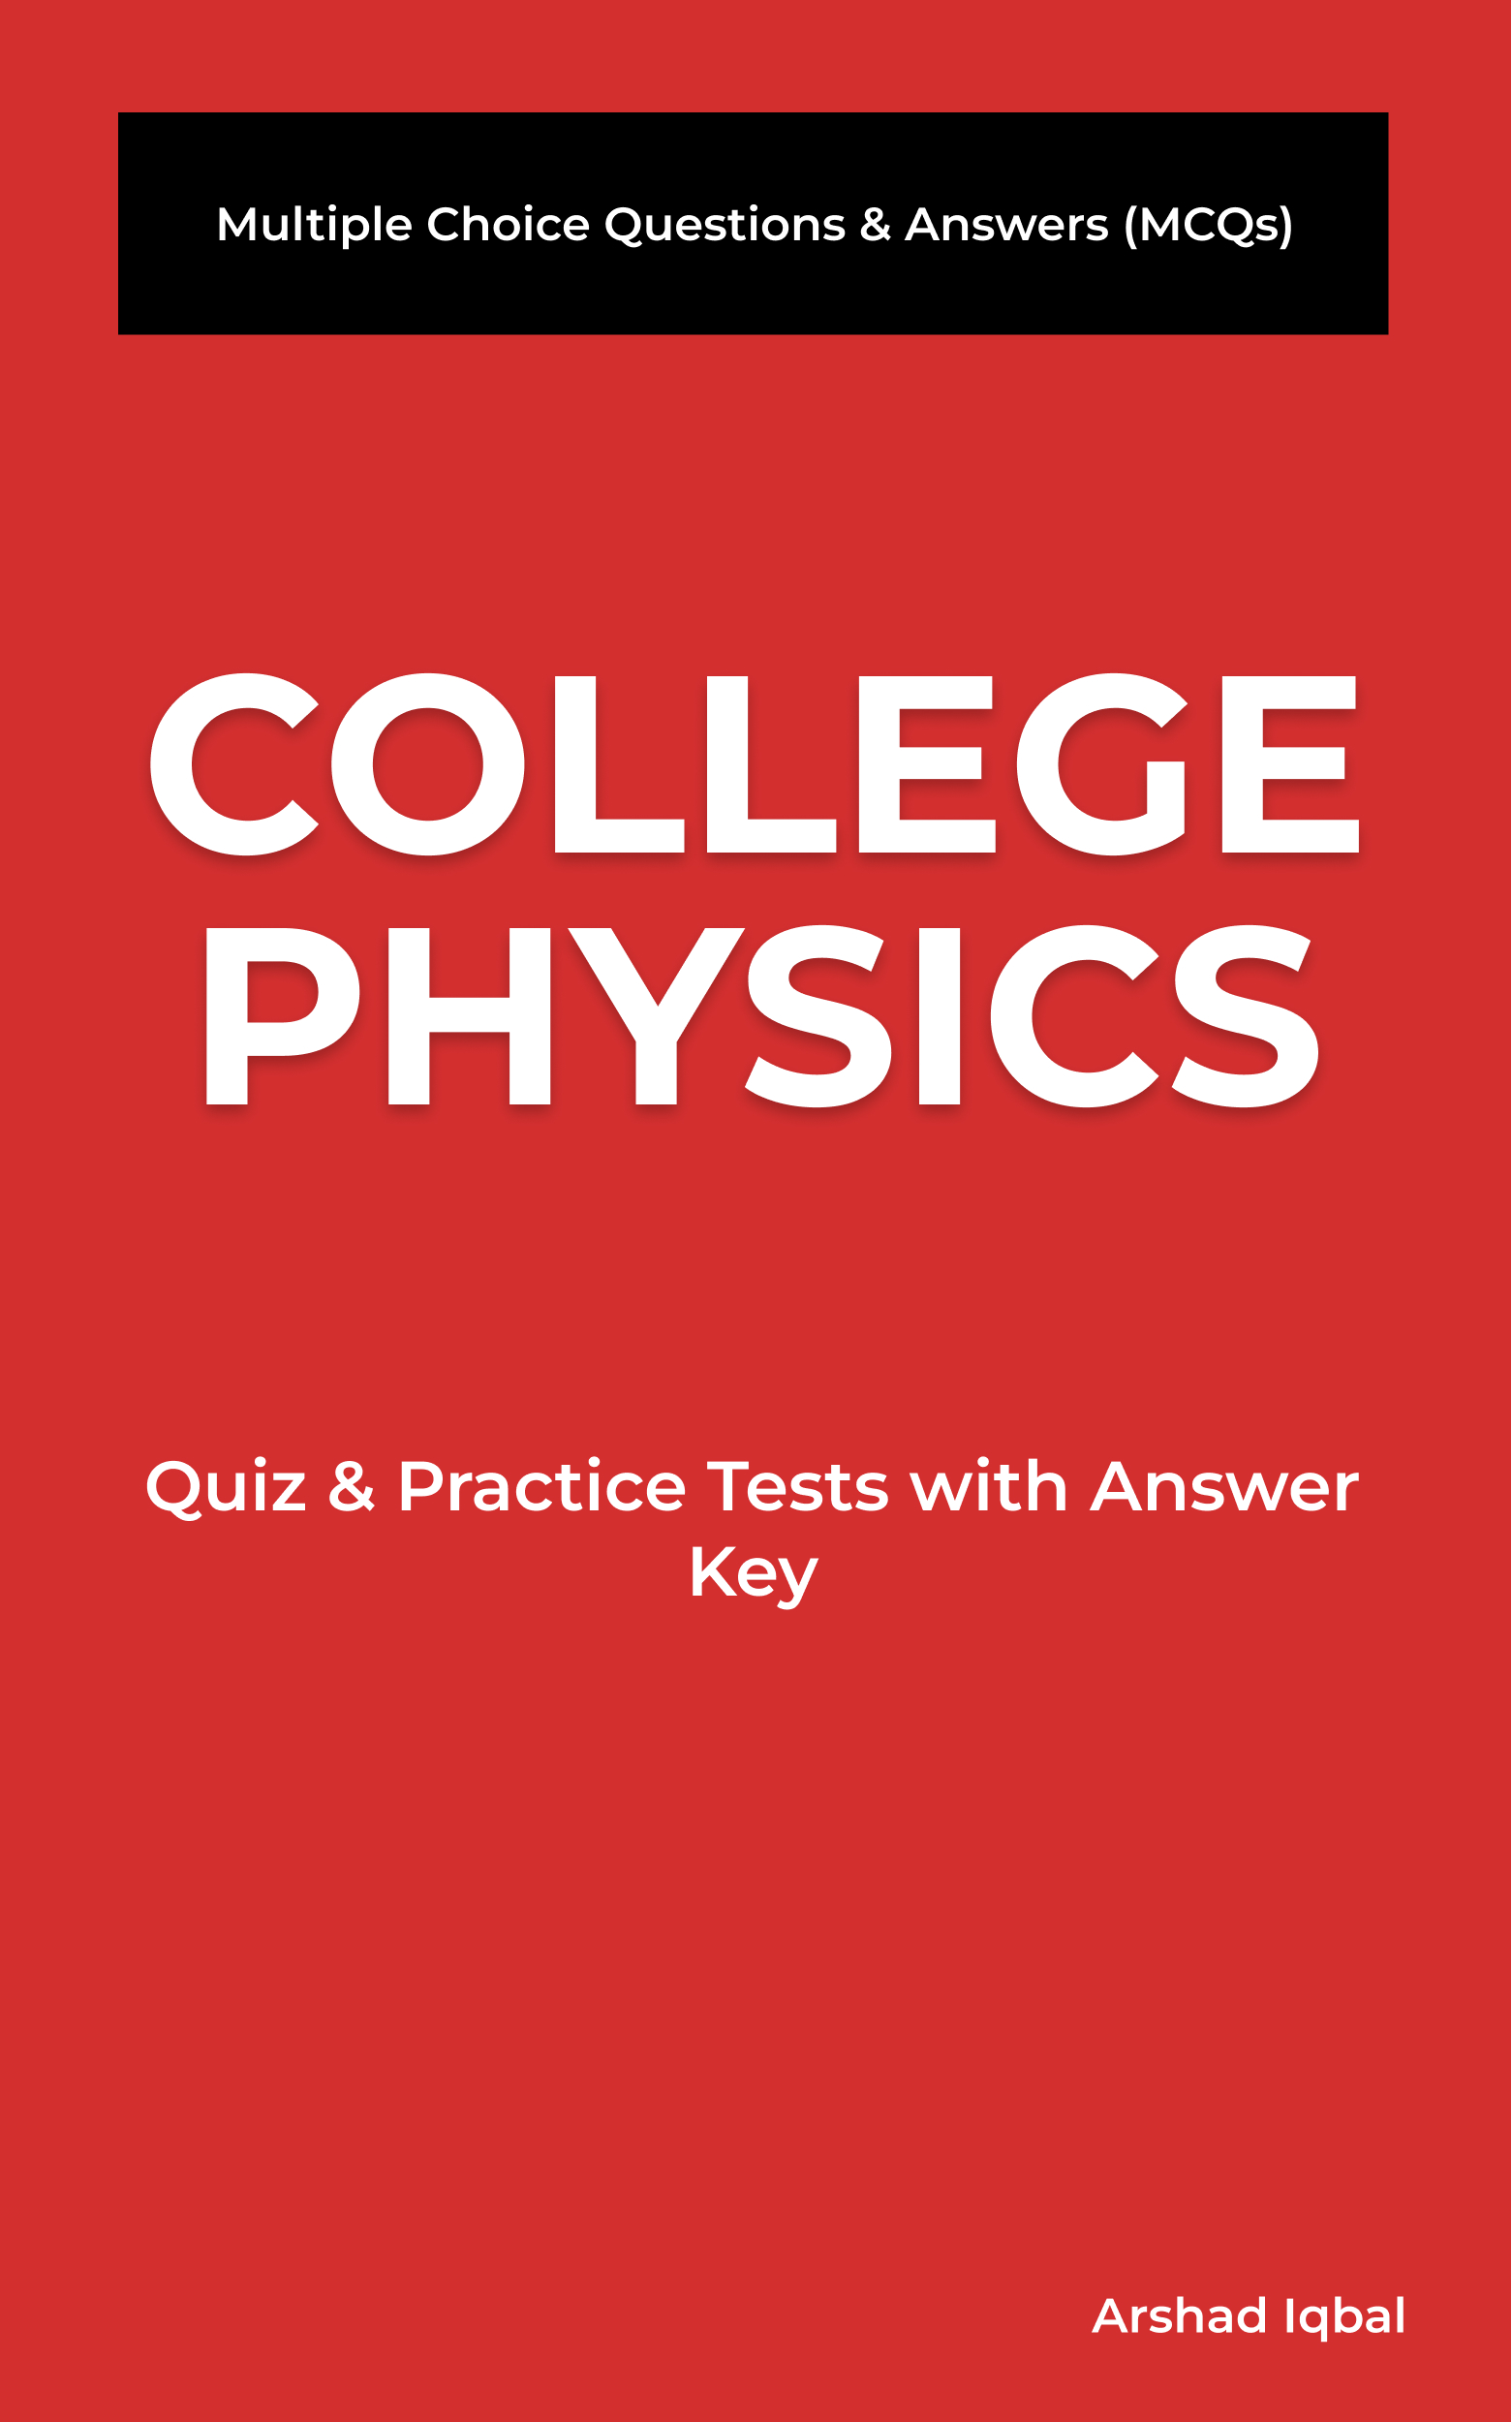 College Physics MCQ Book PDF